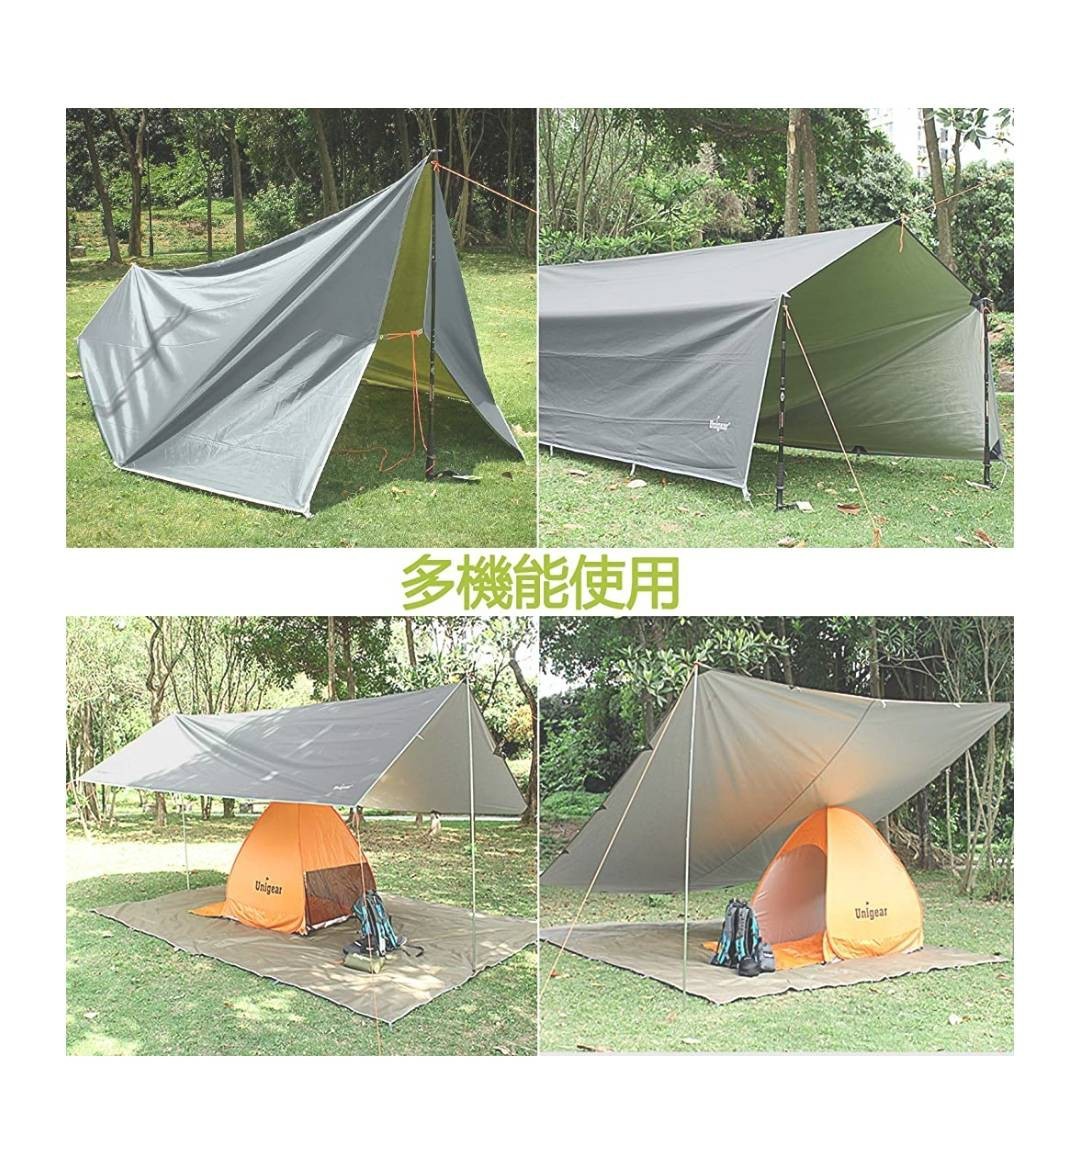 【新品未開封】 Unigear 防水タープ キャンプ テント 遮熱 収納ケース付 2-6人用